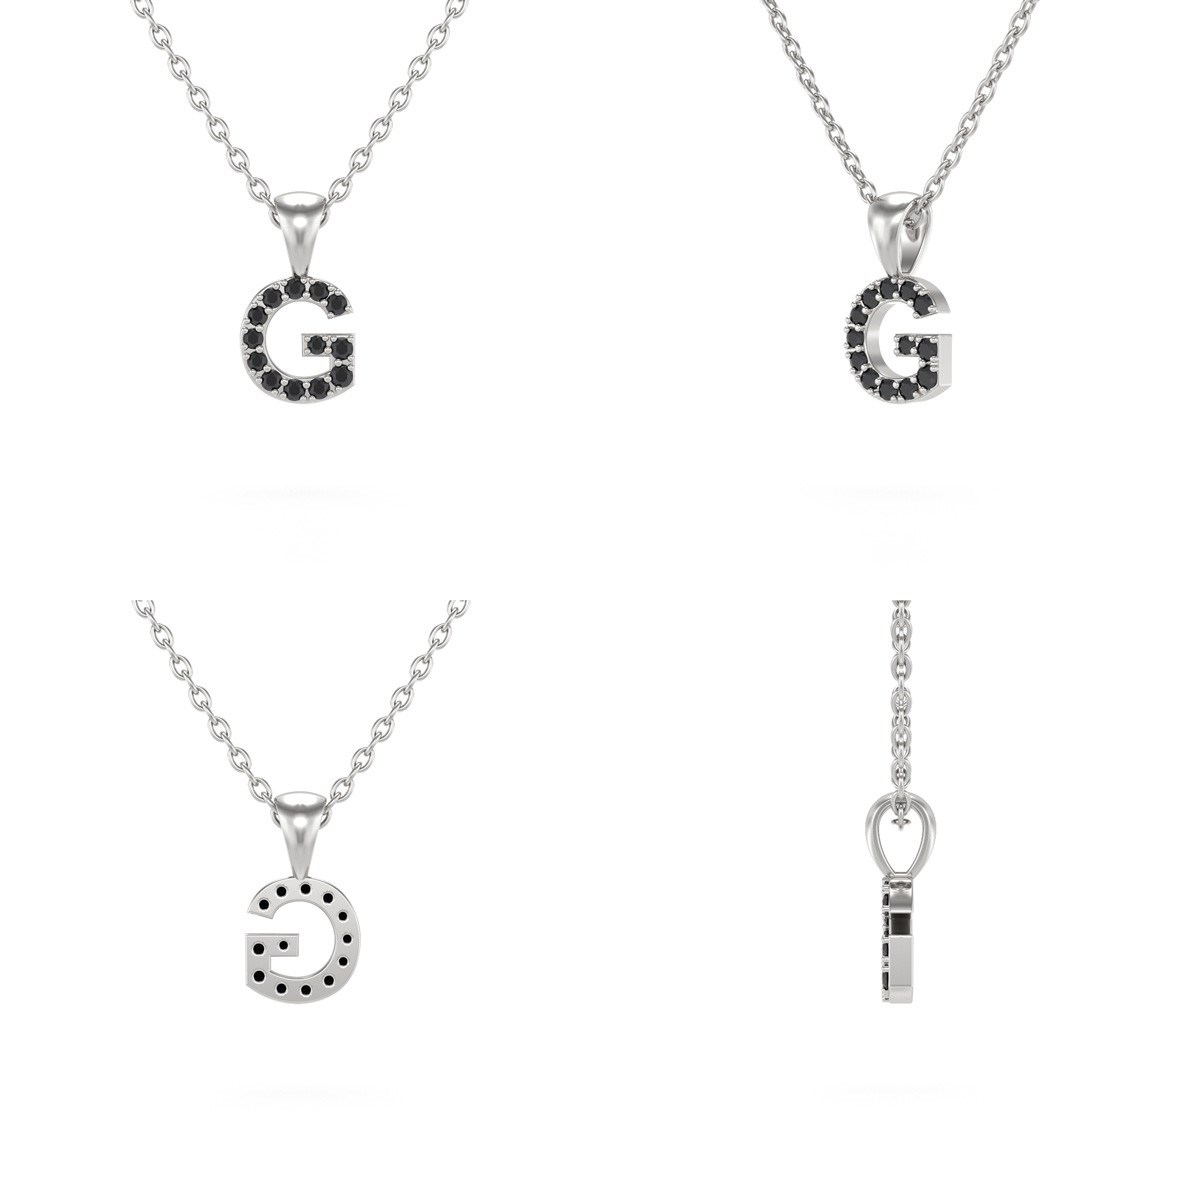 Collier Pendentif ADEN Lettre G Or 750 Blanc Diamant Noir Chaine Or 750 incluse 0.72grs - vue 2